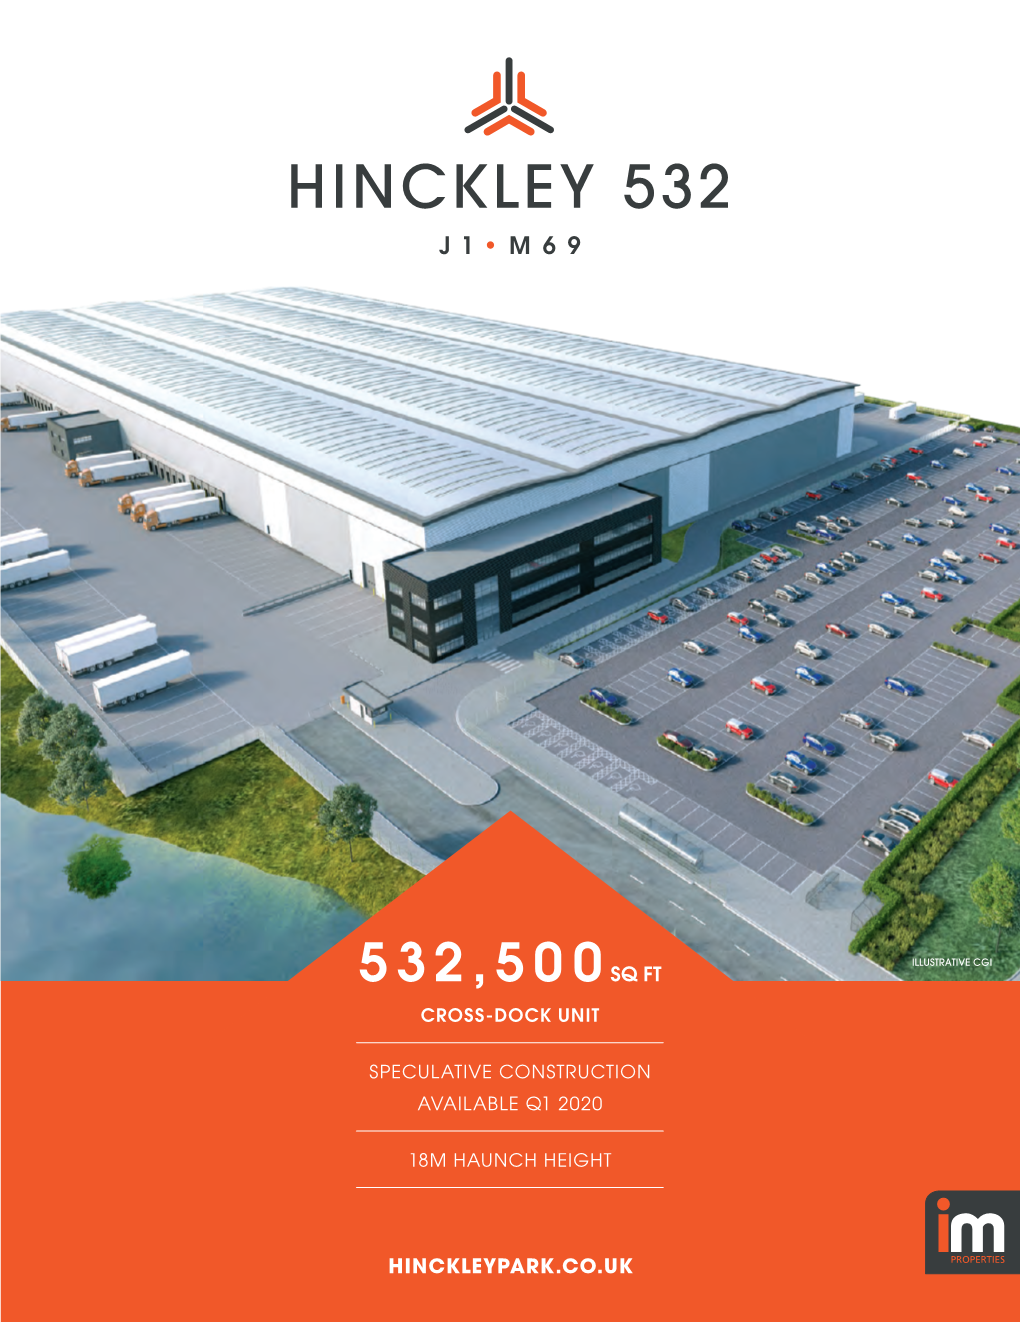 Hinckley 532 J 1 • M69